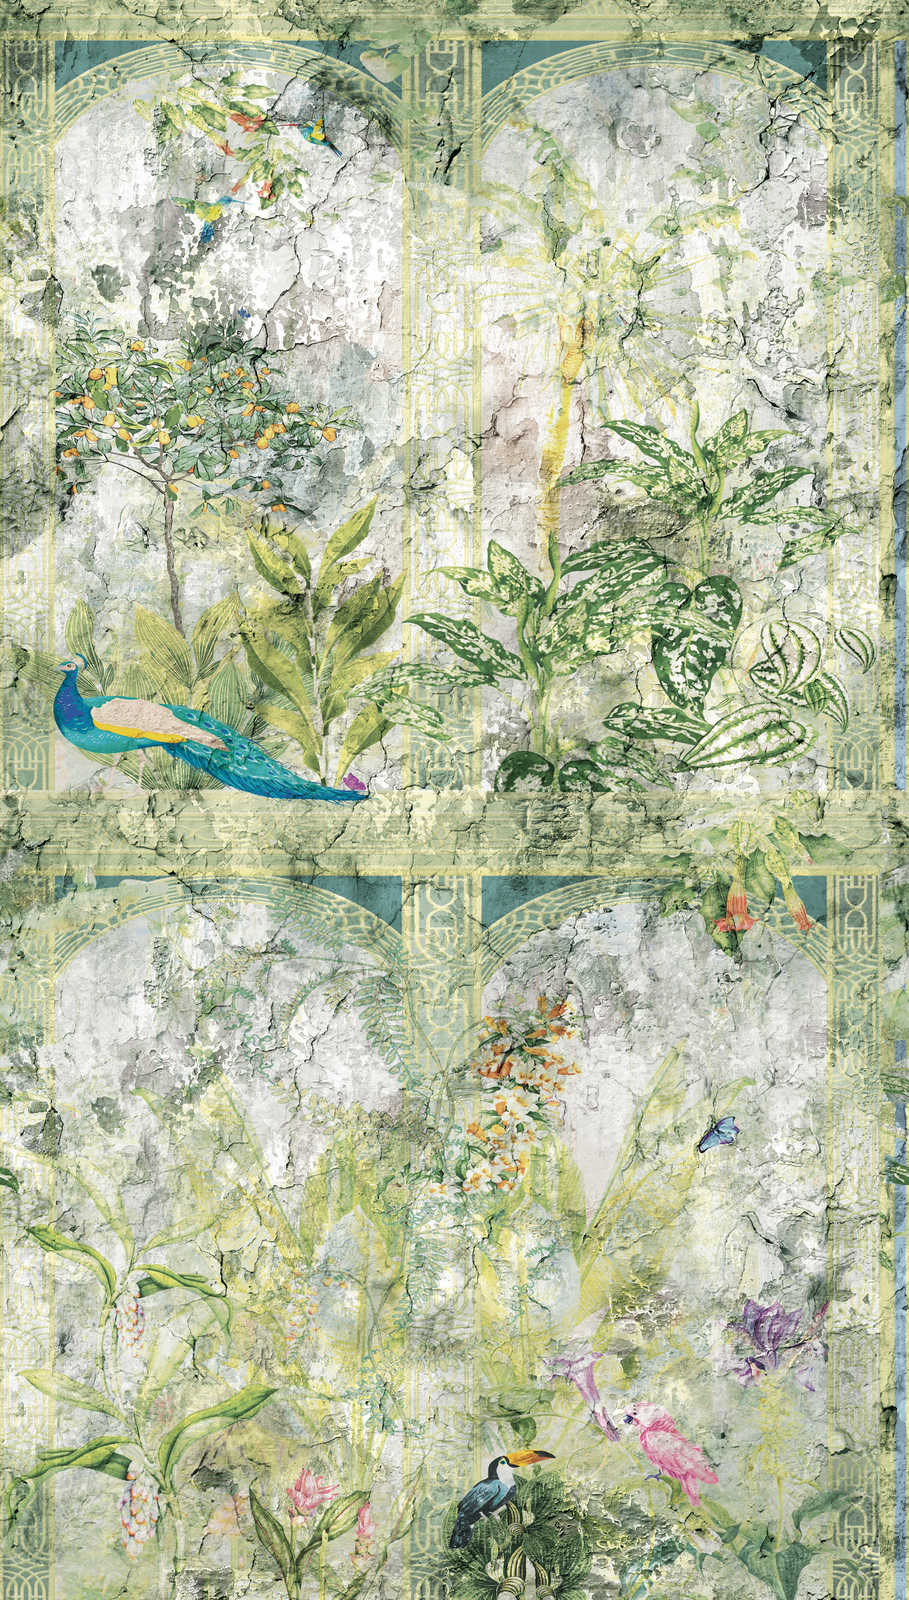             Papier peint style jungle et oiseaux vintage - vert, bleu, gris
        